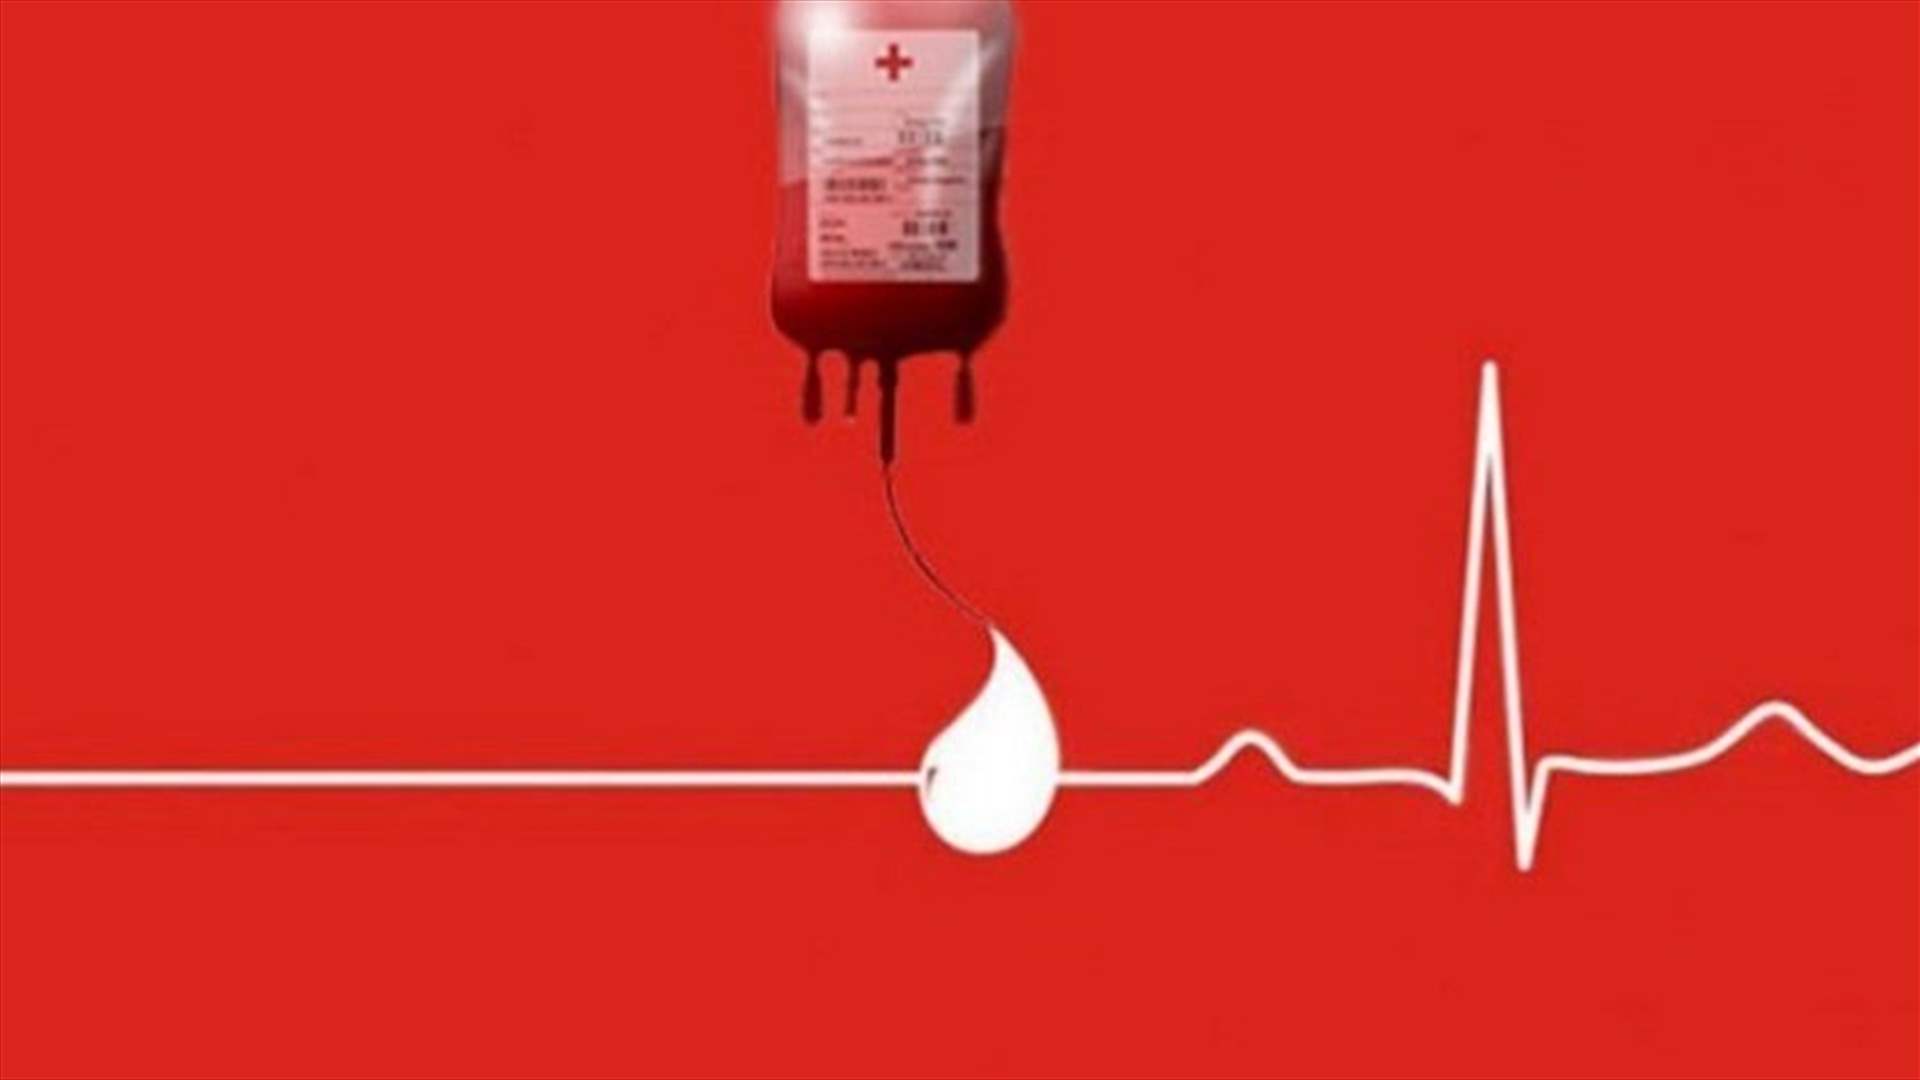  مريض بحاجة ماسة الى 4 وحدات دم من فئة A+ في مركز الصليب الاحمر في جونية. للتبرع:81456996